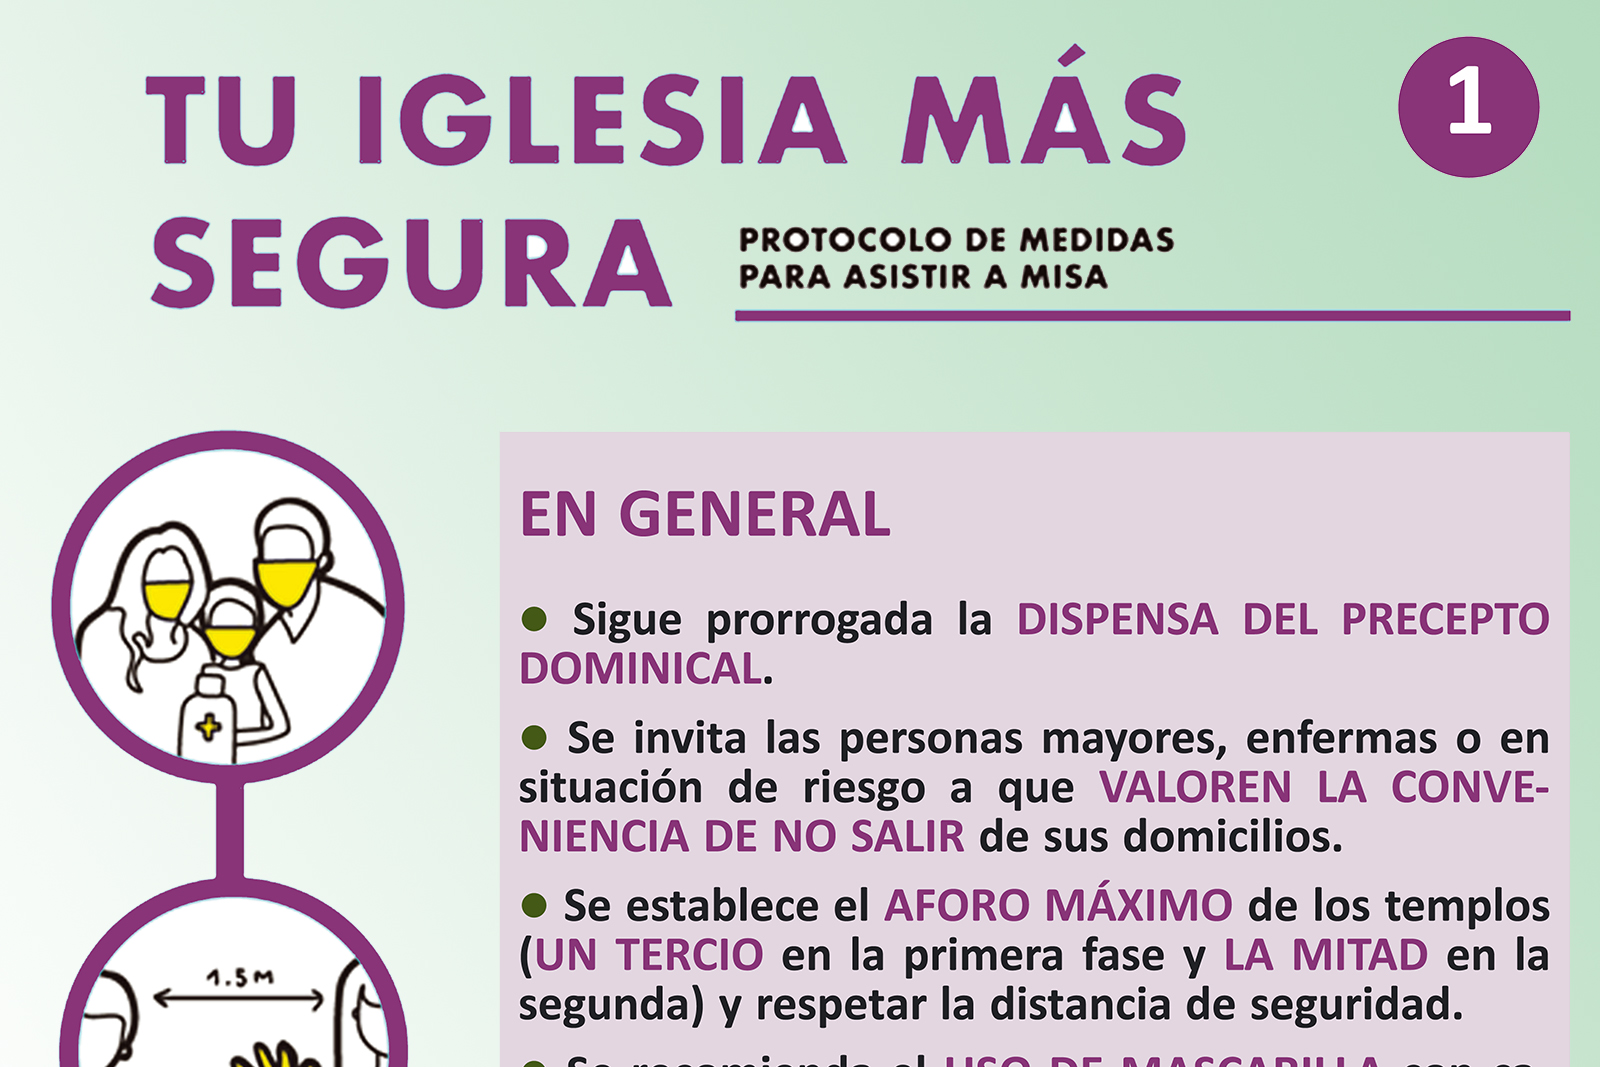 Diócesis de Palencia - Información importante para retomar las  celebraciones en la Iglesia con seguridad